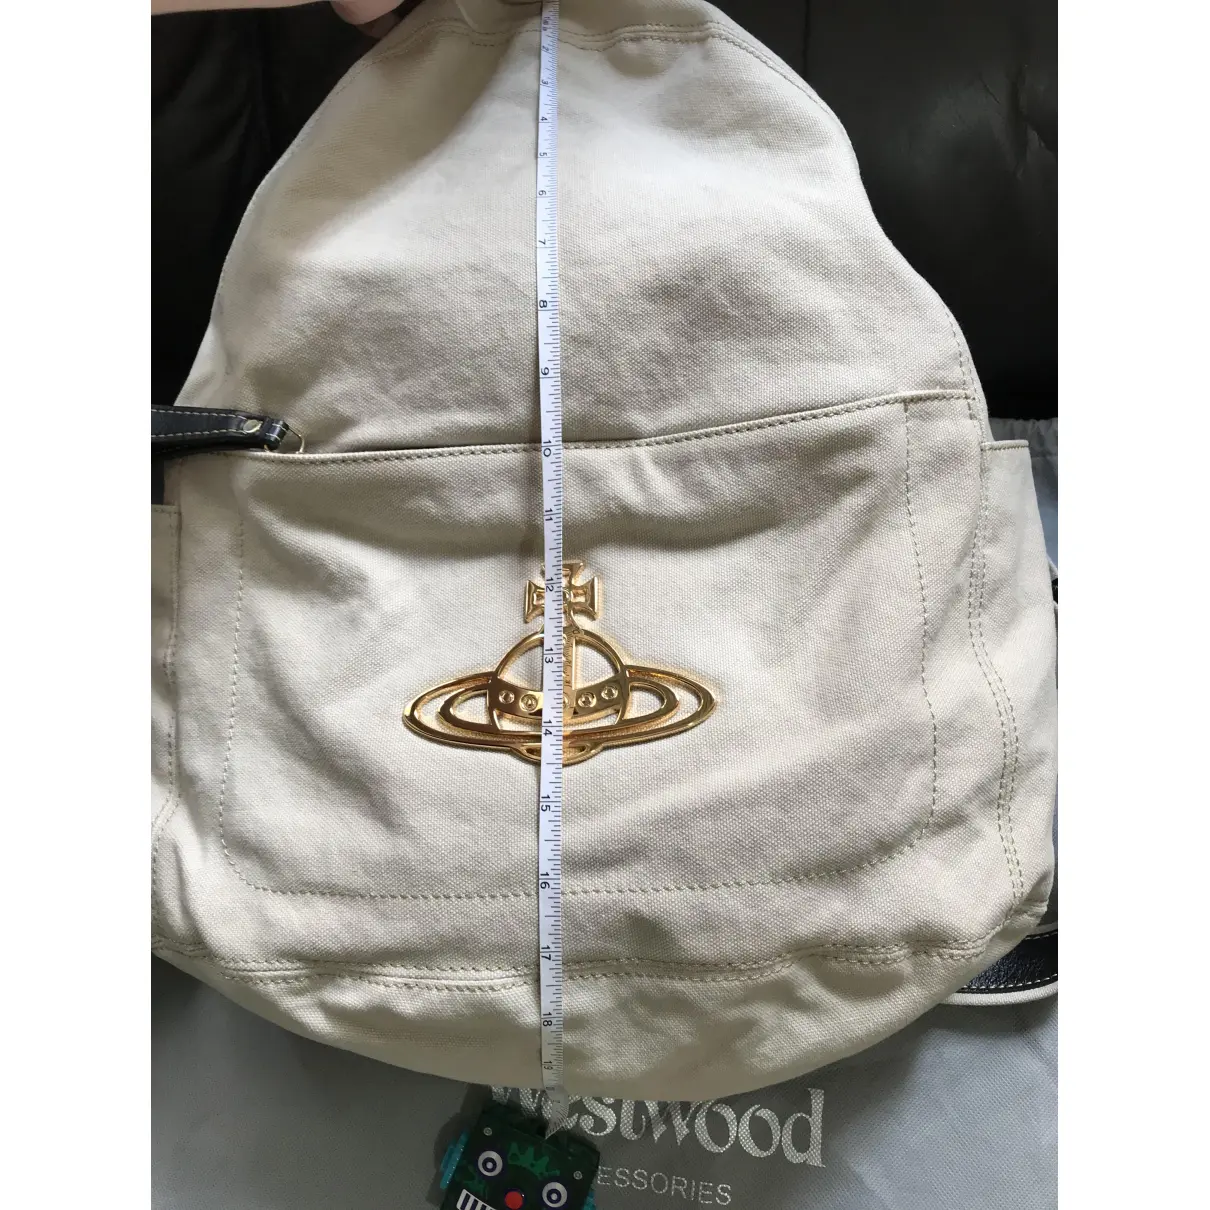 Linen backpack Vivienne Westwood